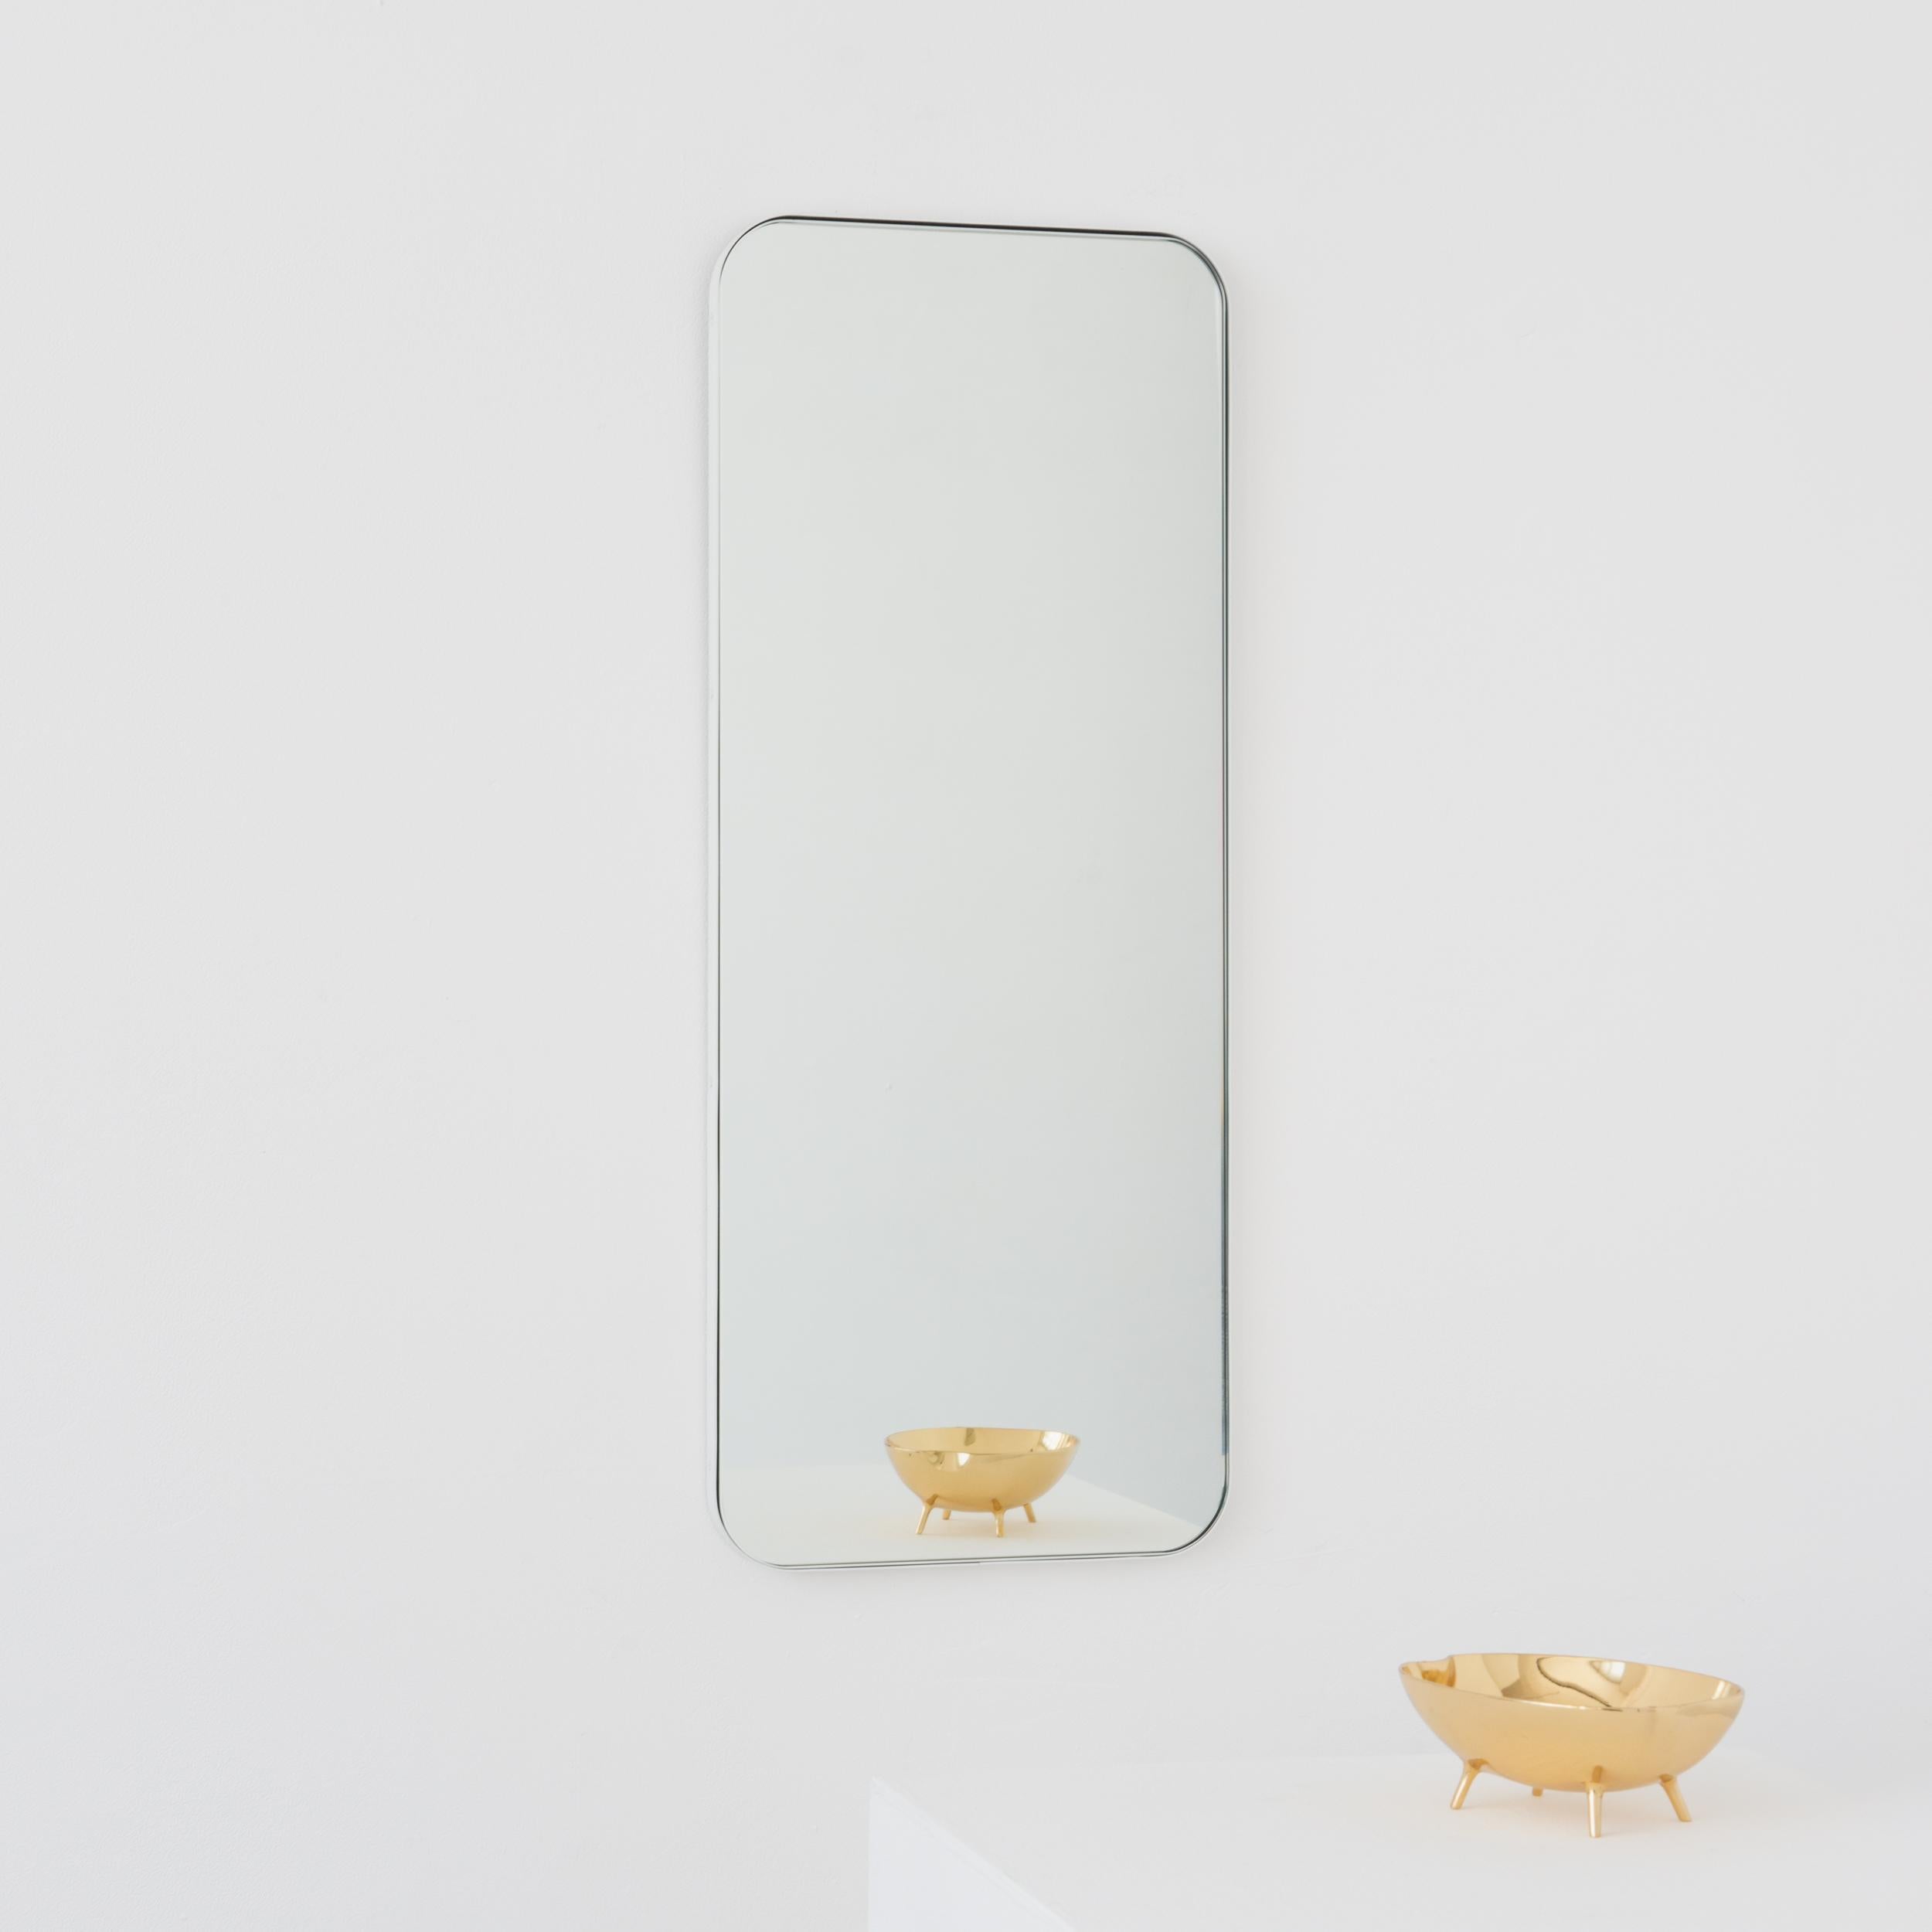 Minimalistischer rechteckiger Spiegel mit modernem weißen Rahmen. Teil der charmanten Quadris™ Kollektion, entworfen und handgefertigt in London, UK. 

Die Lieferung erfolgt mit einer speziellen Z-Stange für eine einfache Installation. Auf Anfrage